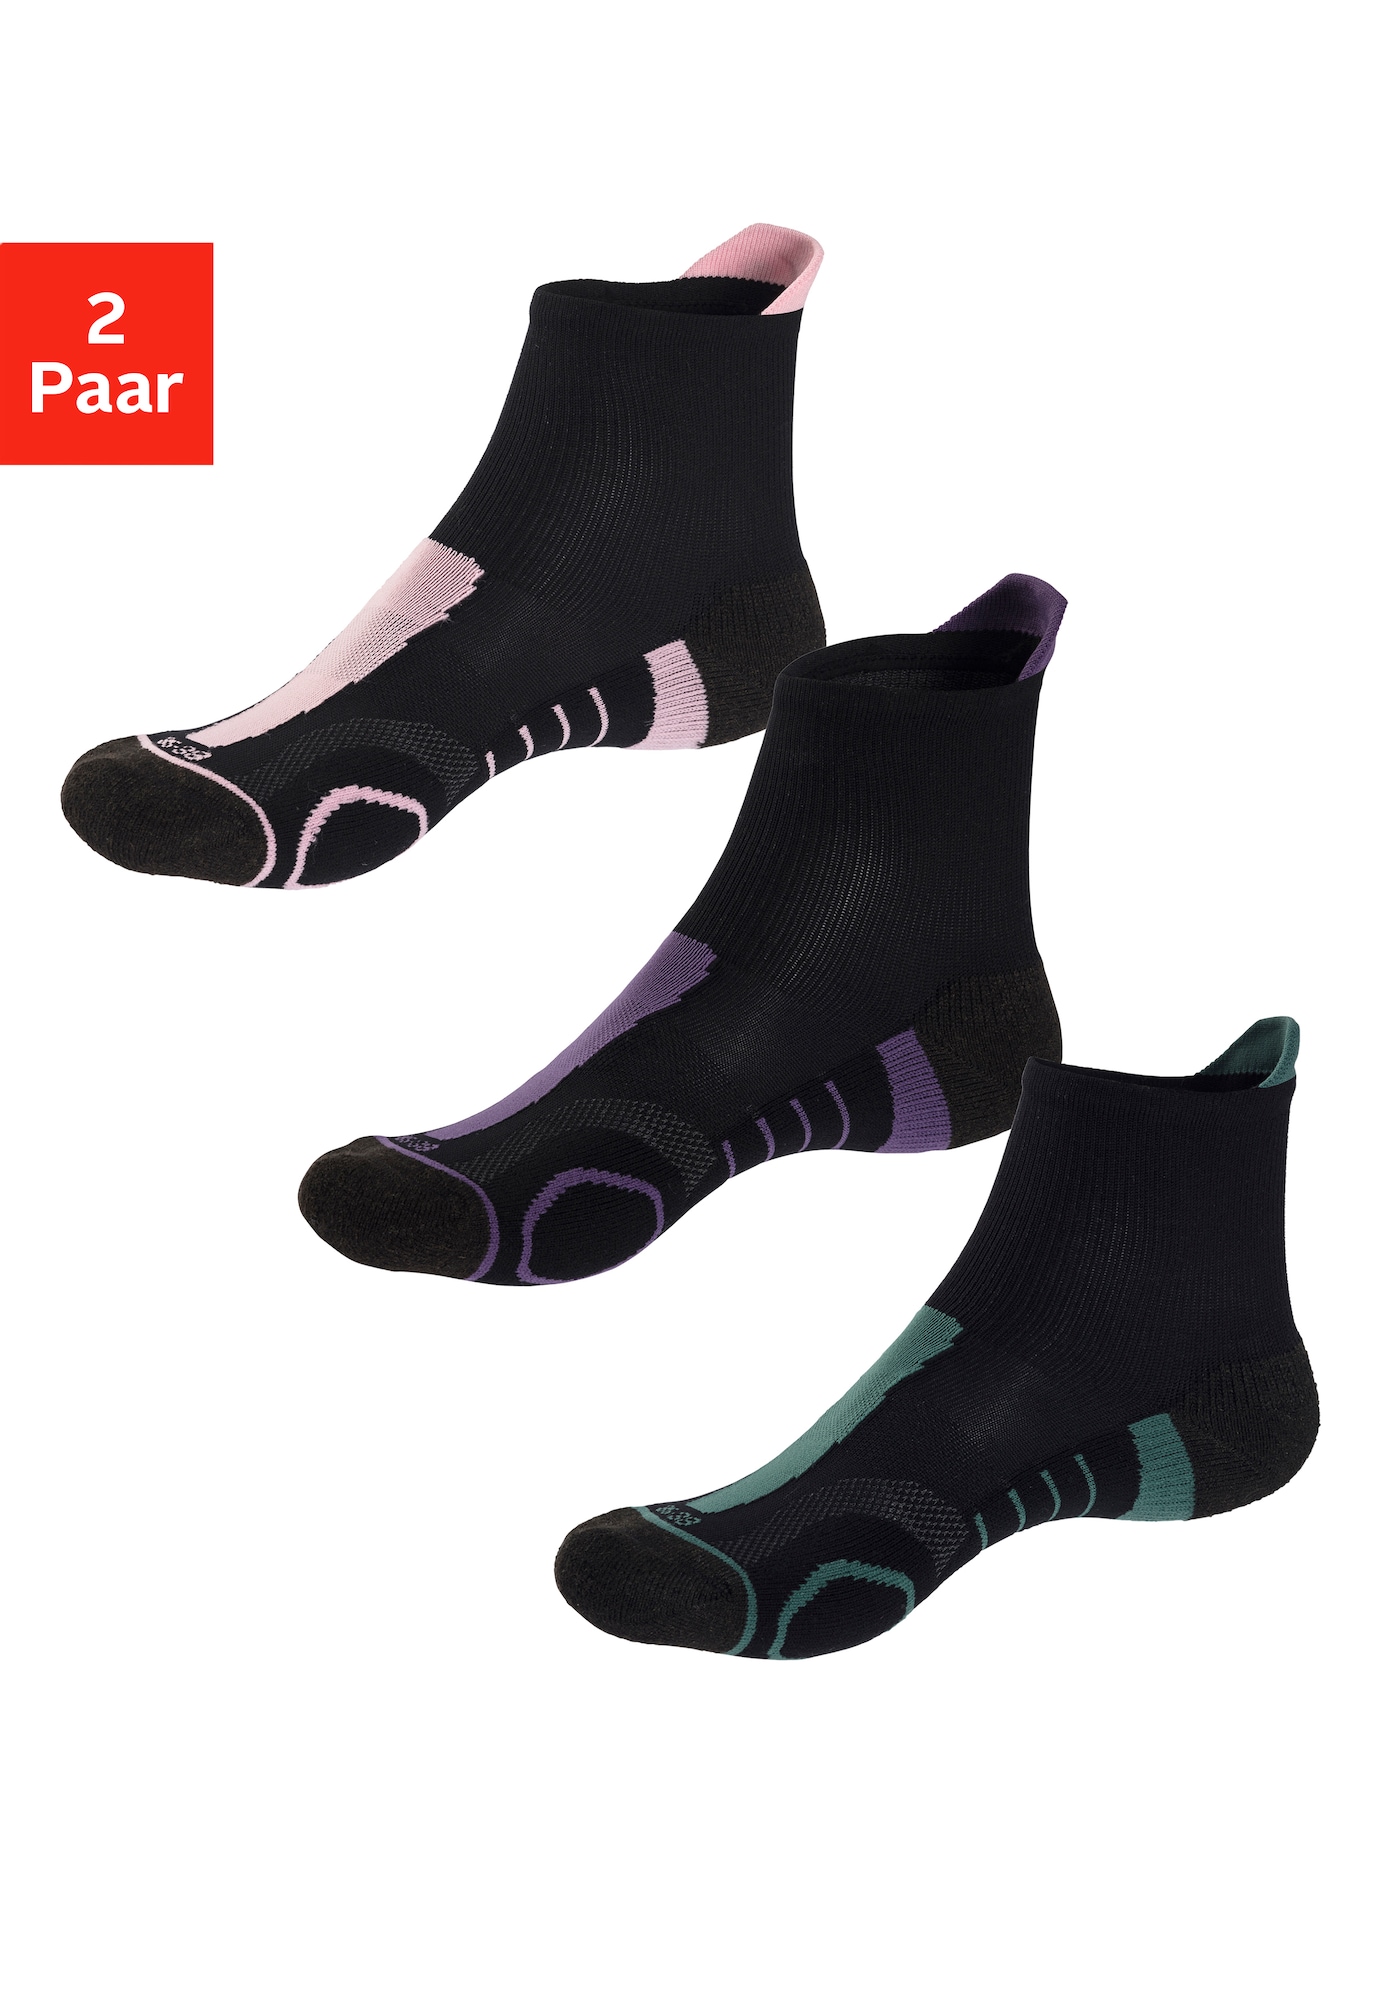 LASCANA ACTIVE Sportinės kojinės žalia / tamsiai violetinė / rožių spalva